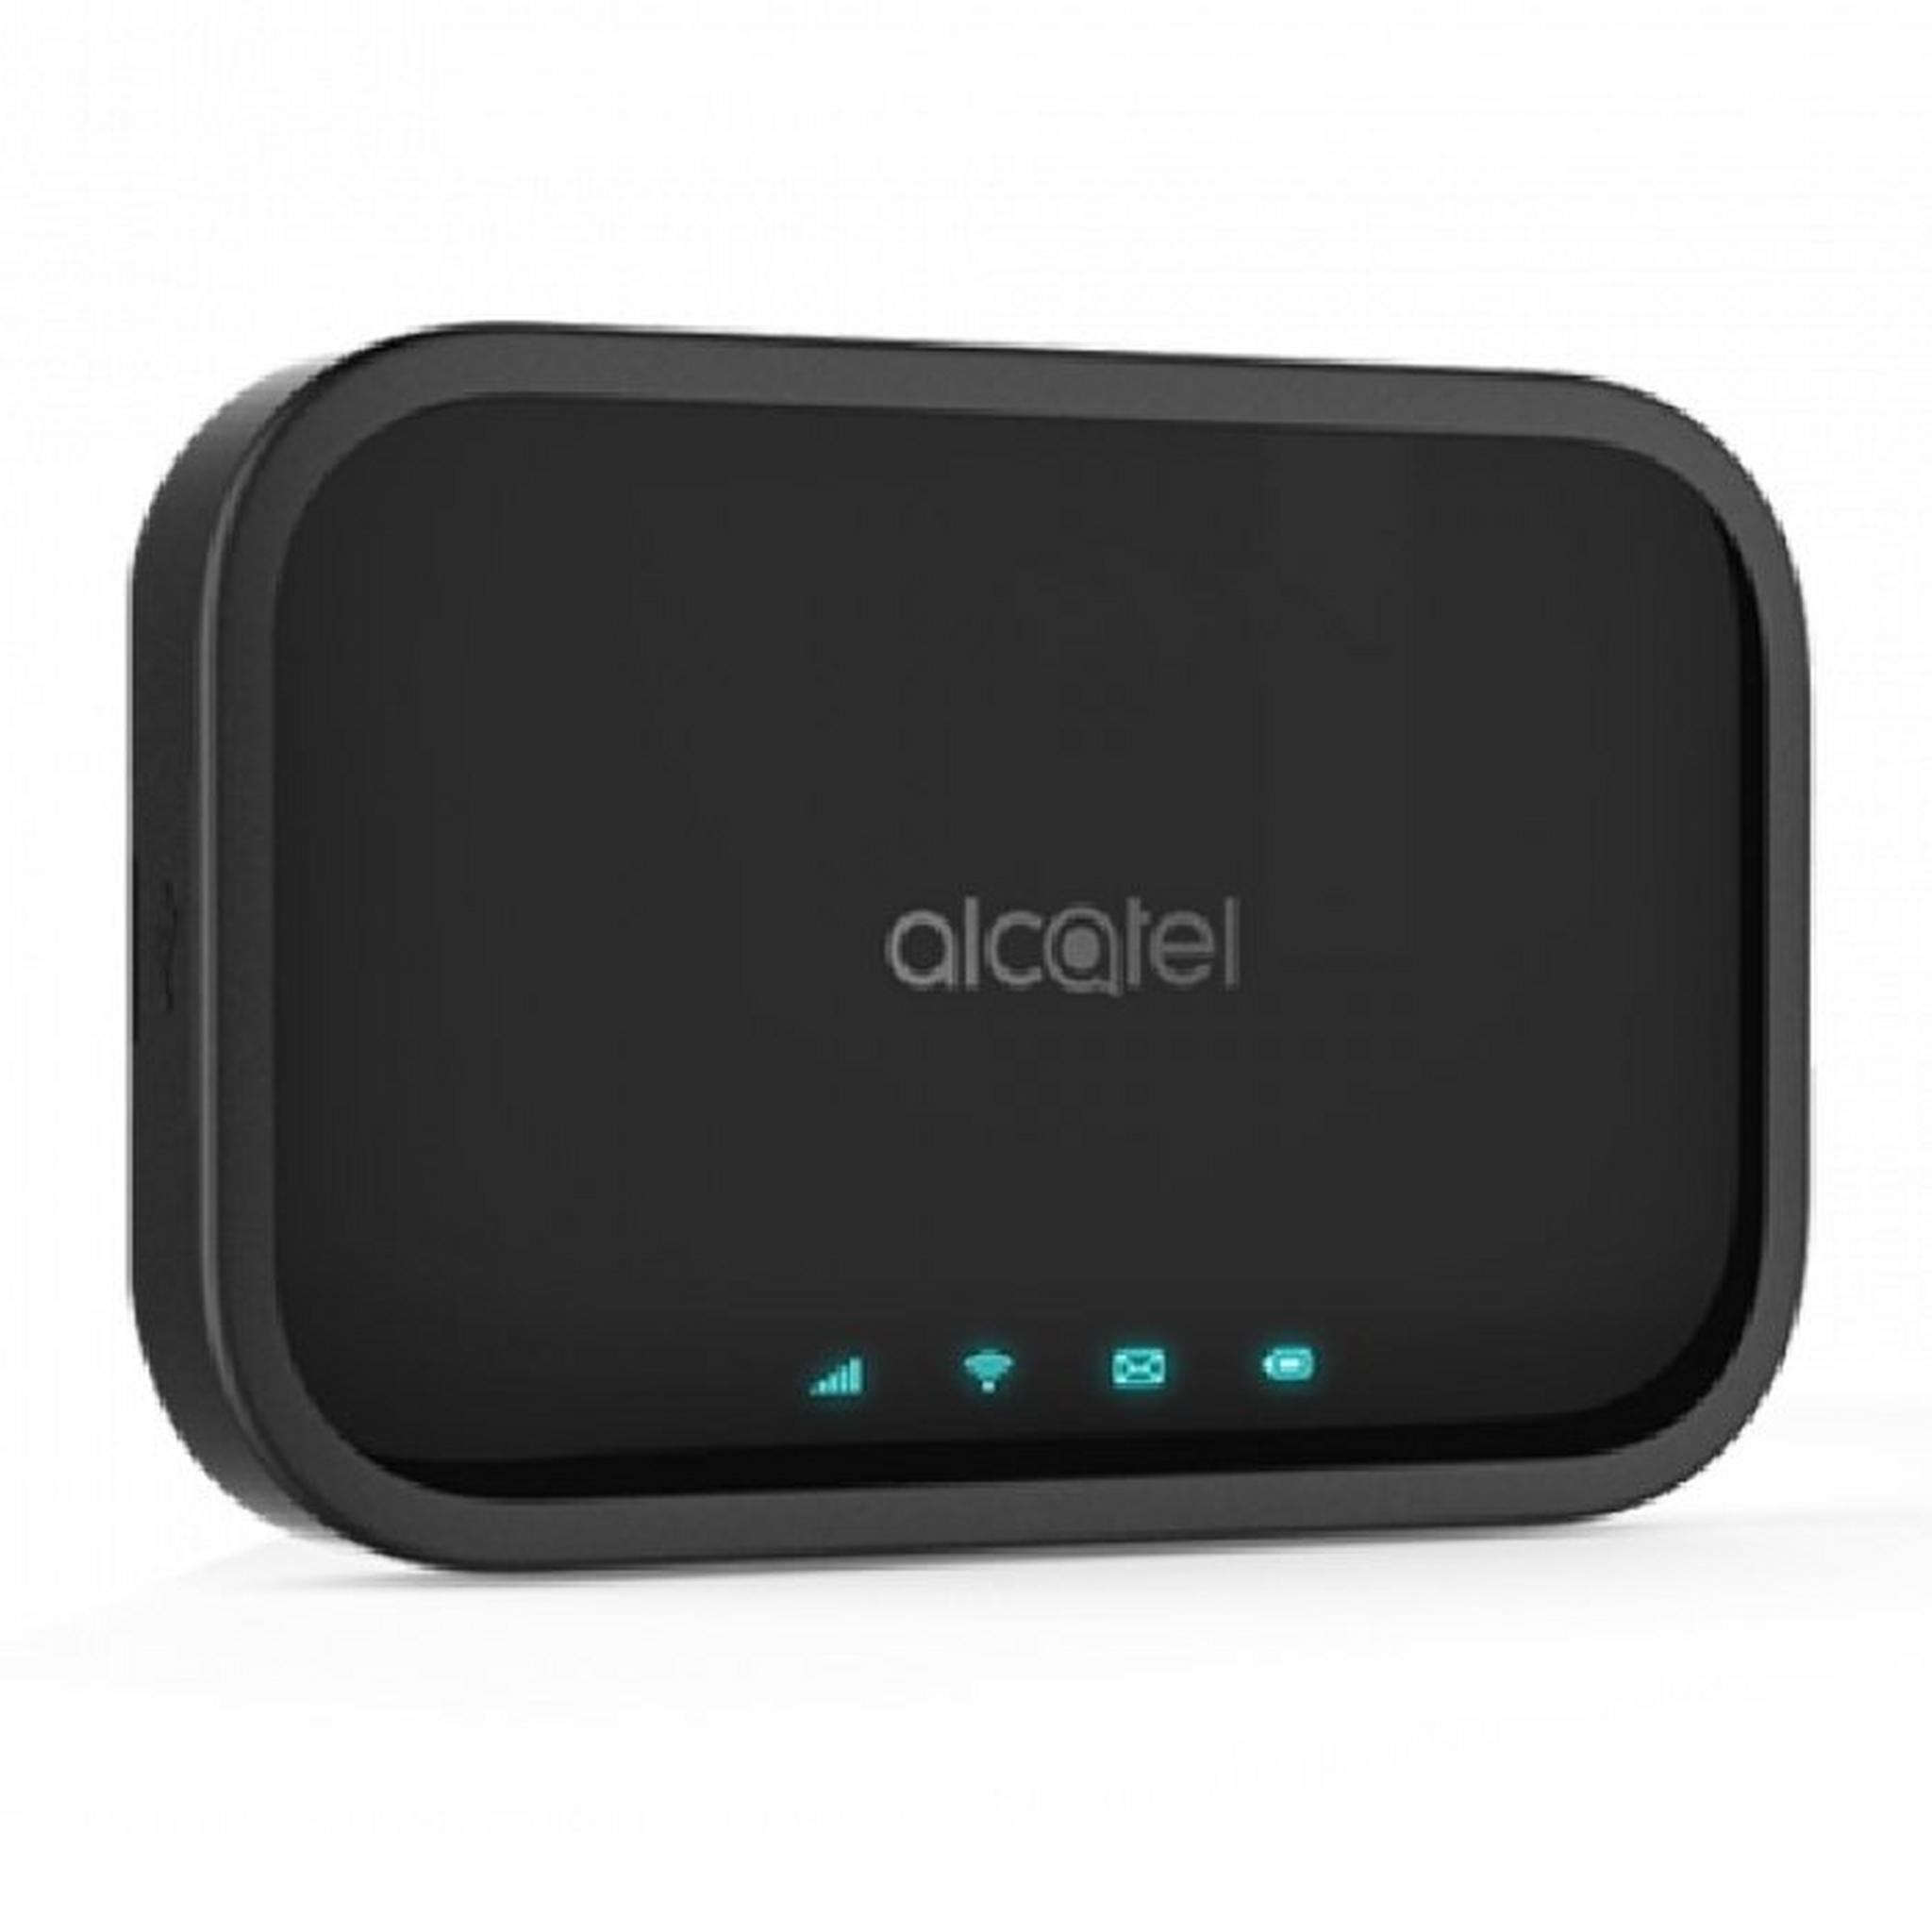 Alcatel 4G Router (MW12) - Black